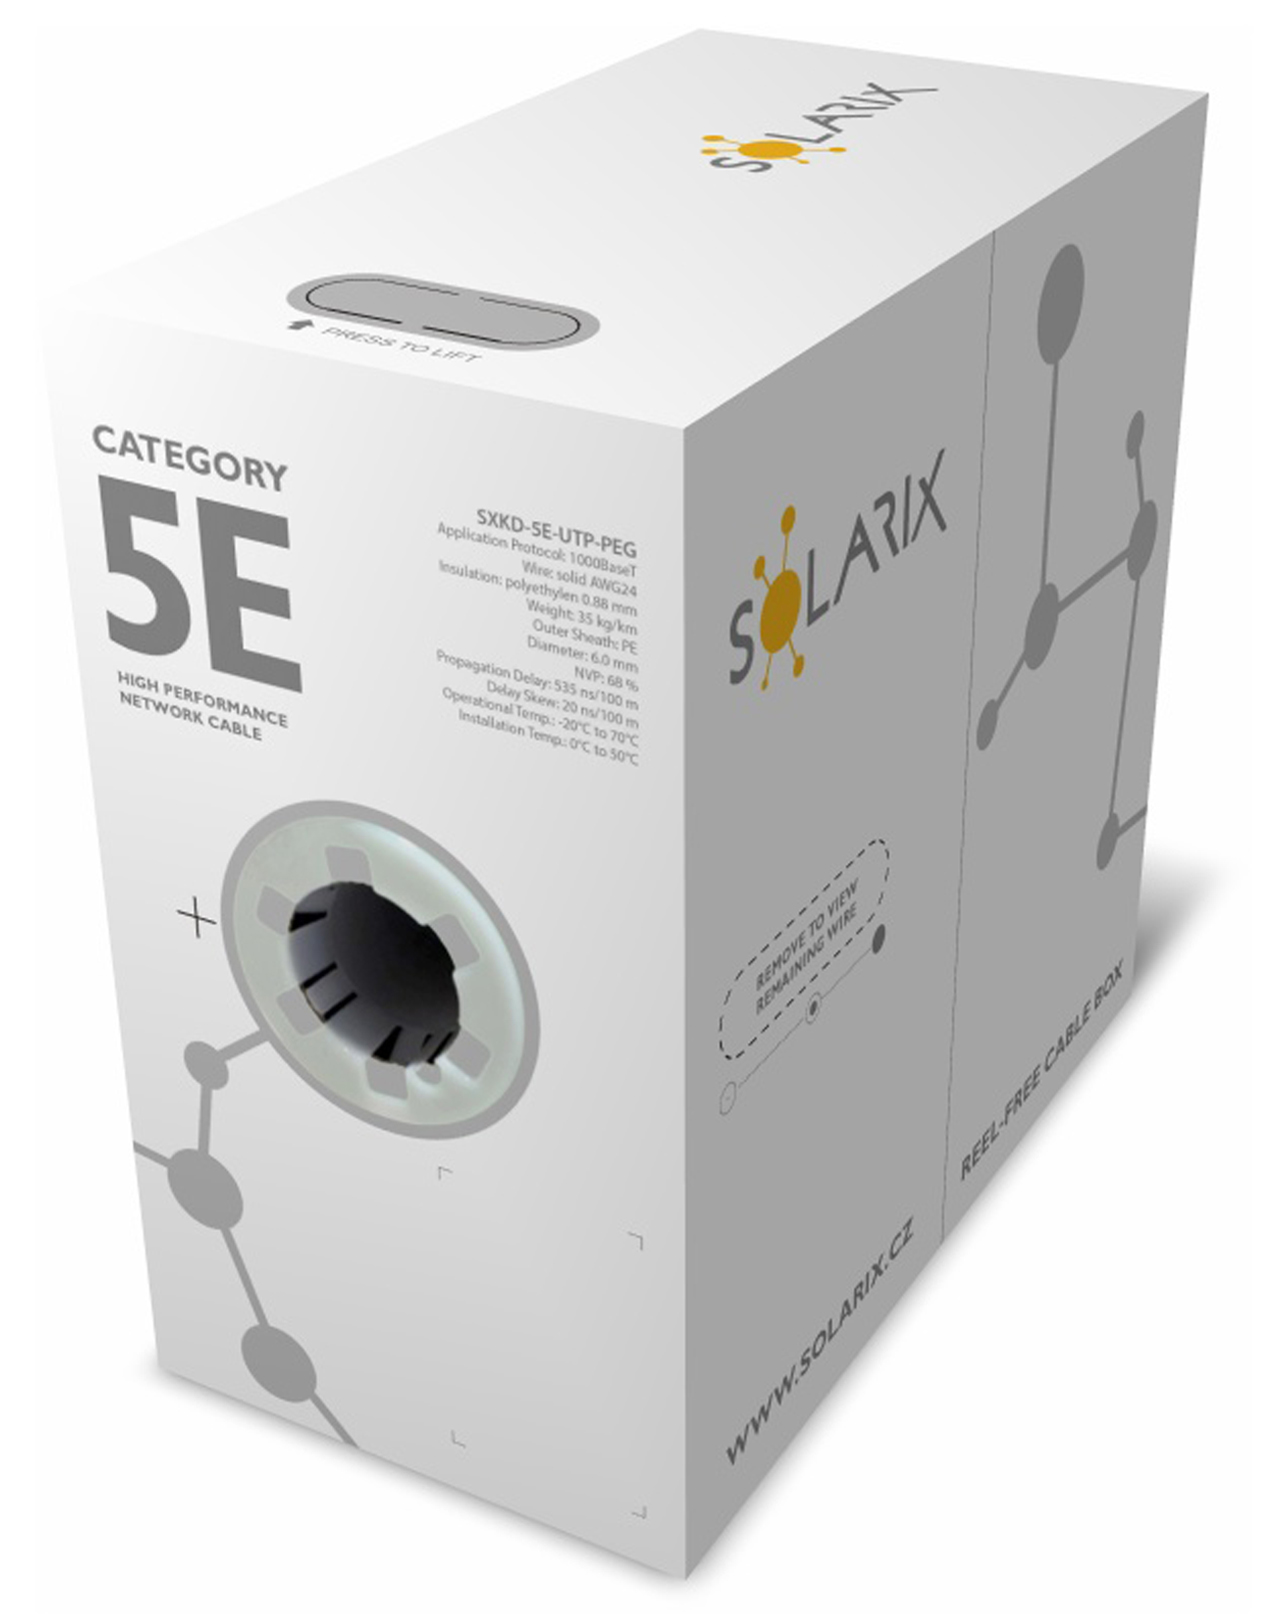 Inštalačný kábel Solarix CAT5E UTP PE Fca vonkajší Gélový 305m/ box SXKD-5E-UTP-PEG 